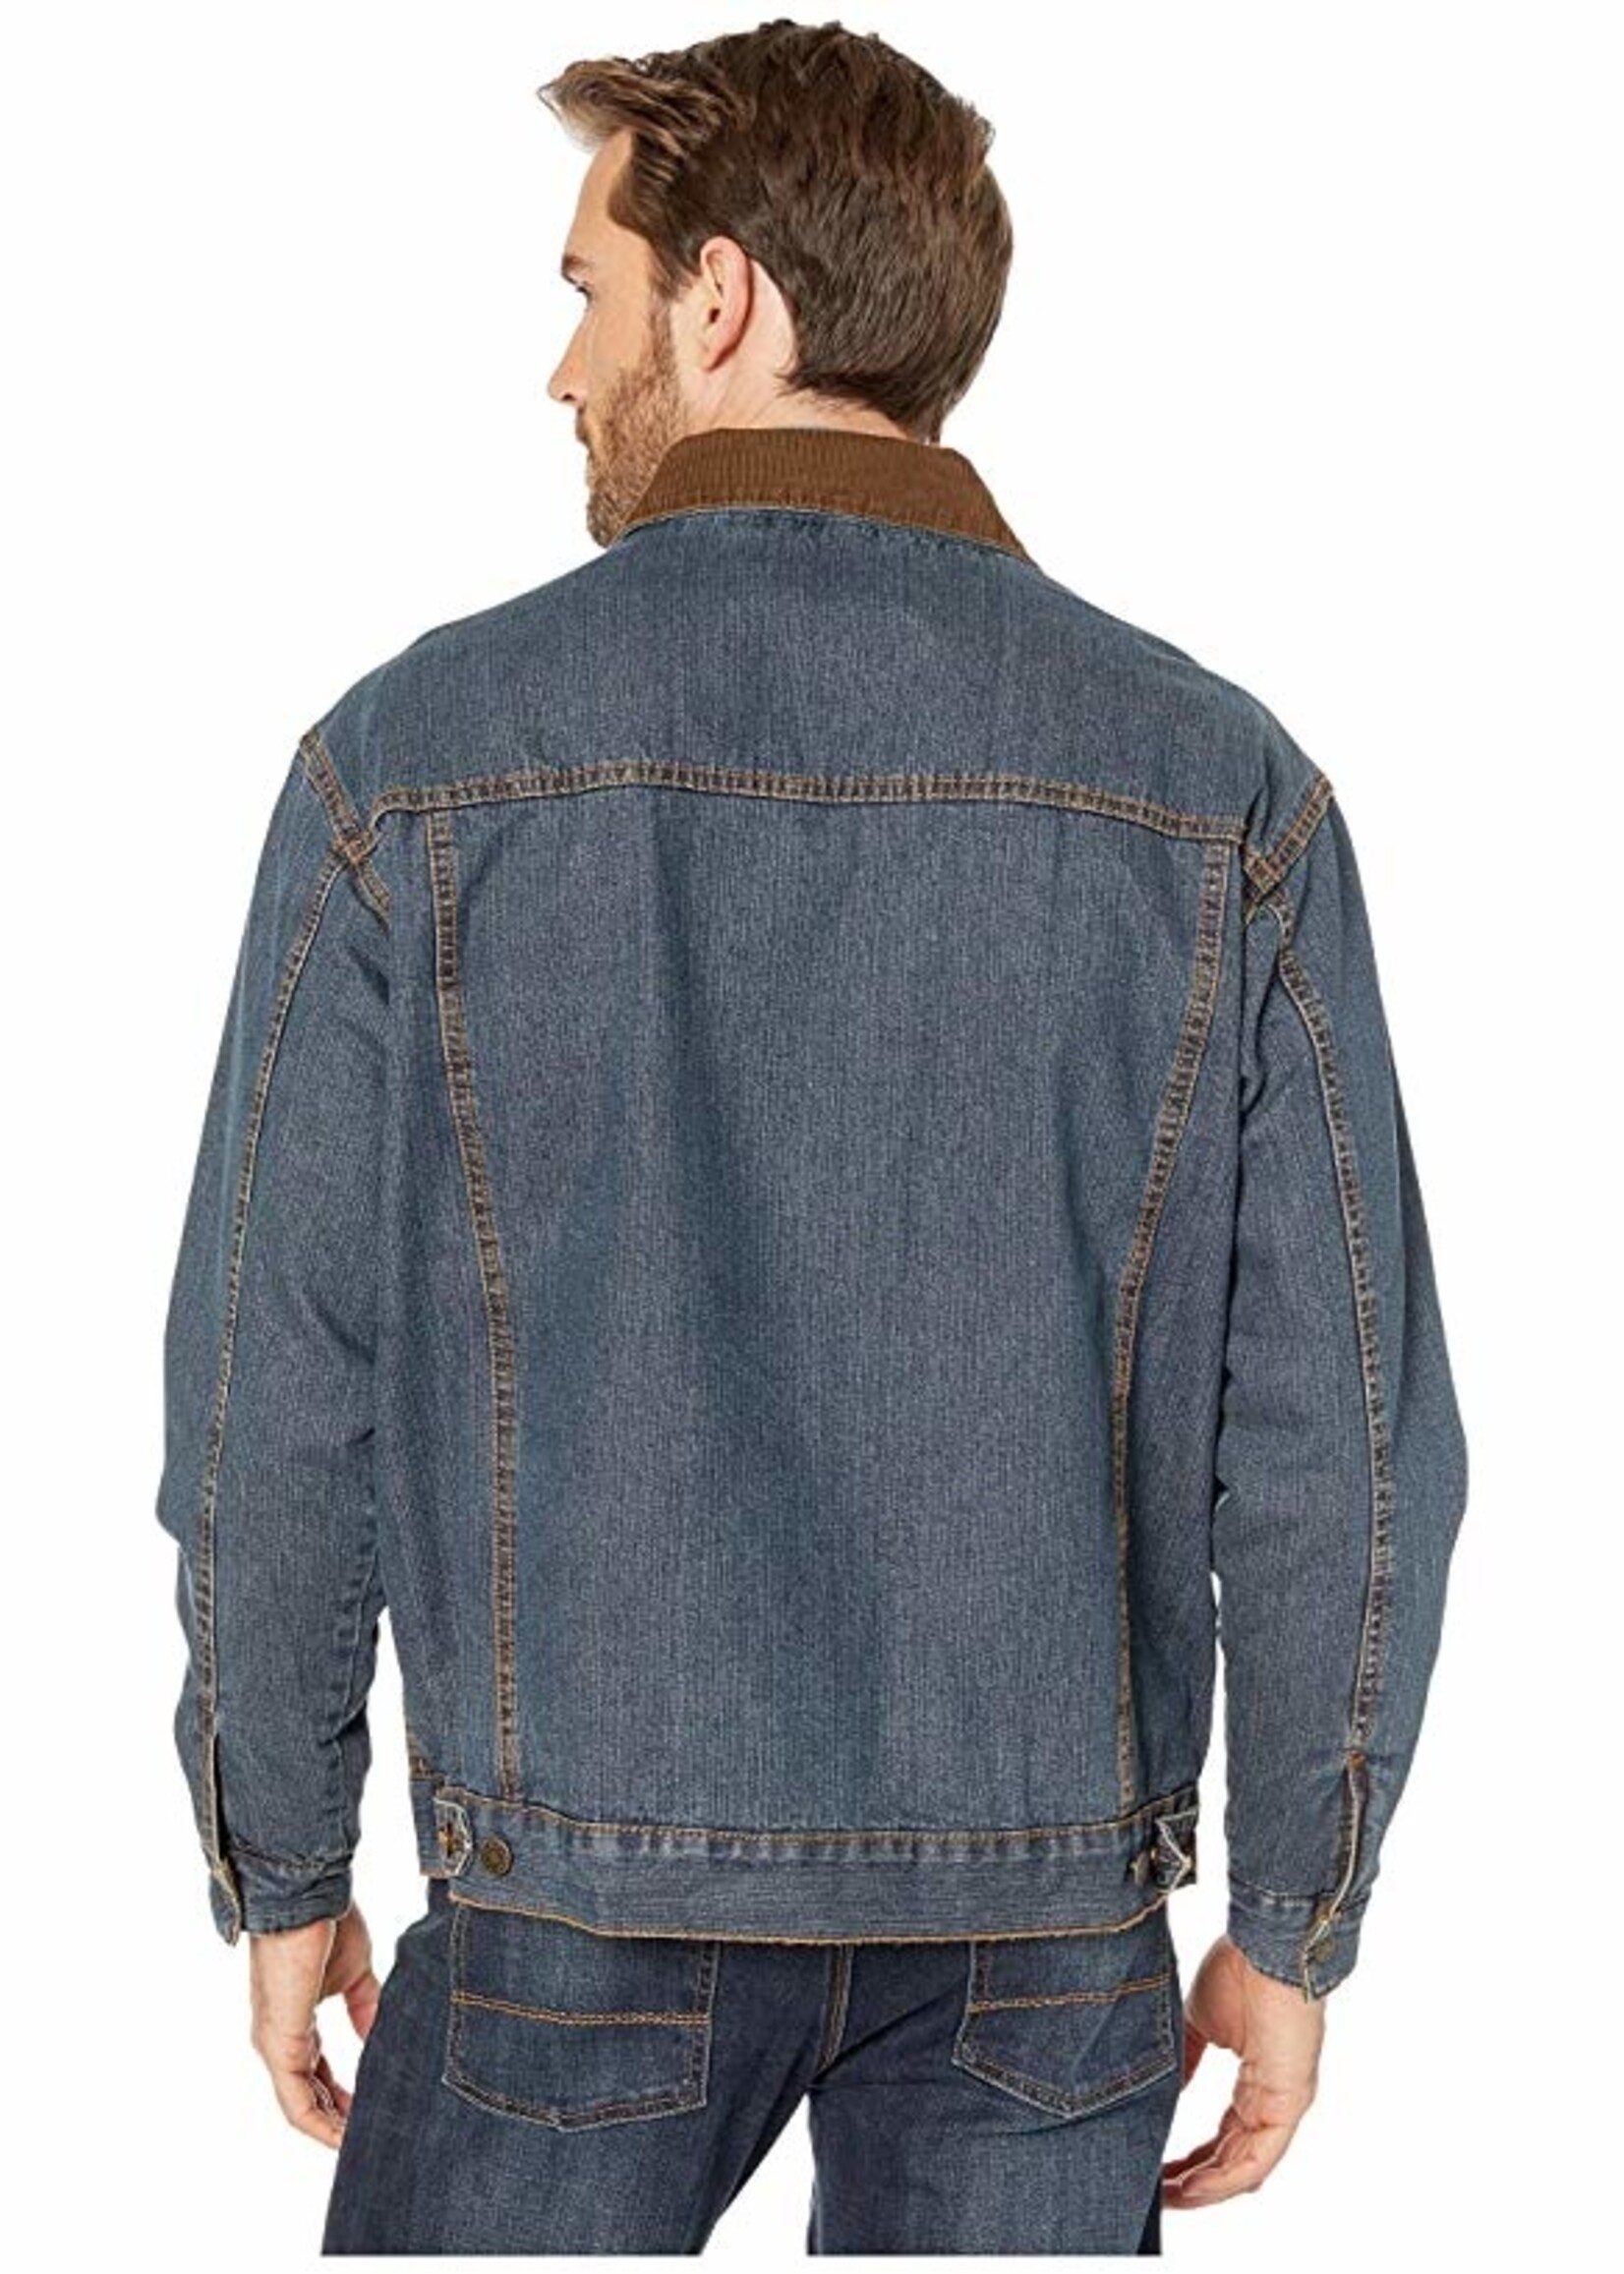 60's Wrangler Vintage Westernwear Worn Faded Blanket Lined Denim Jacket -  Gender-Neutral Adult Clothing